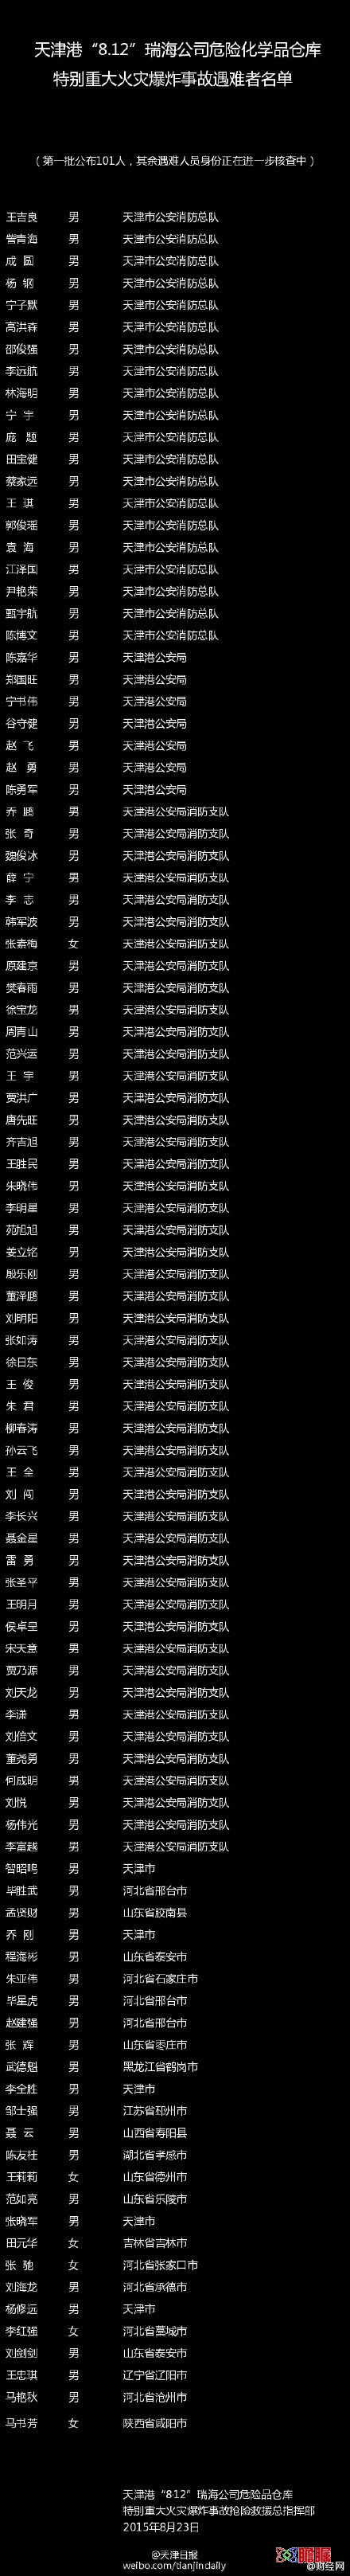 天津港爆炸事故首批101名遇难者名单公布(图)